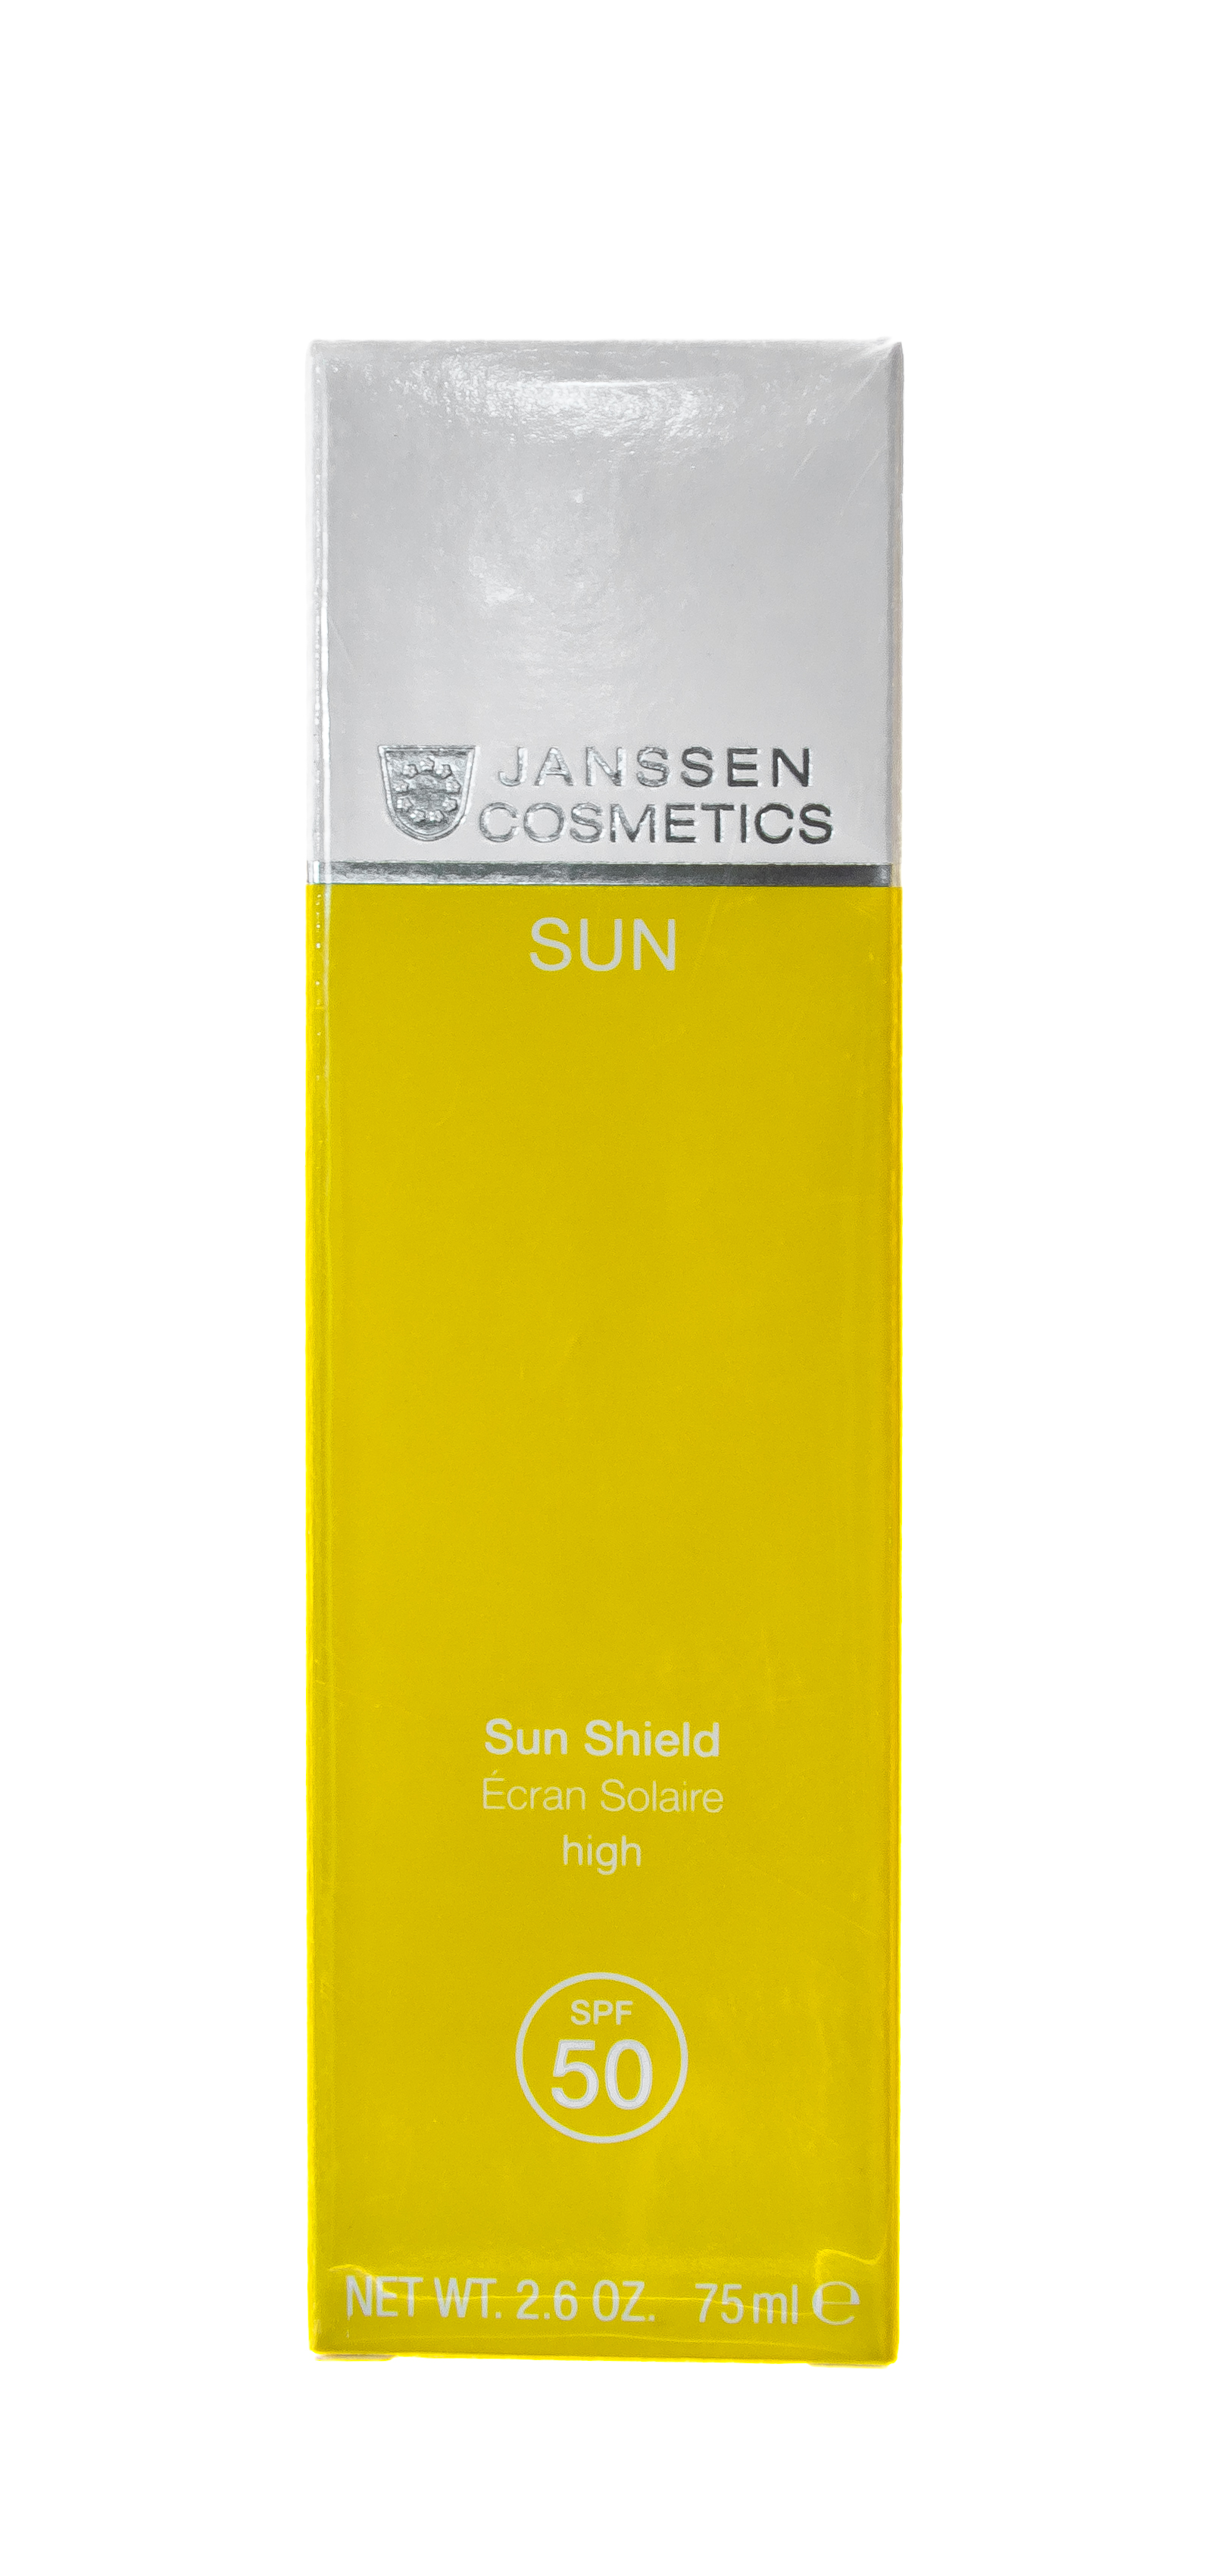 Янсен Косметикс Эмульсия для лица и тела с максимальной защитой SPF50+ Sun Shield SPF 50, 75мл (Janssen Cosmetics, Sun secrets) фото 0